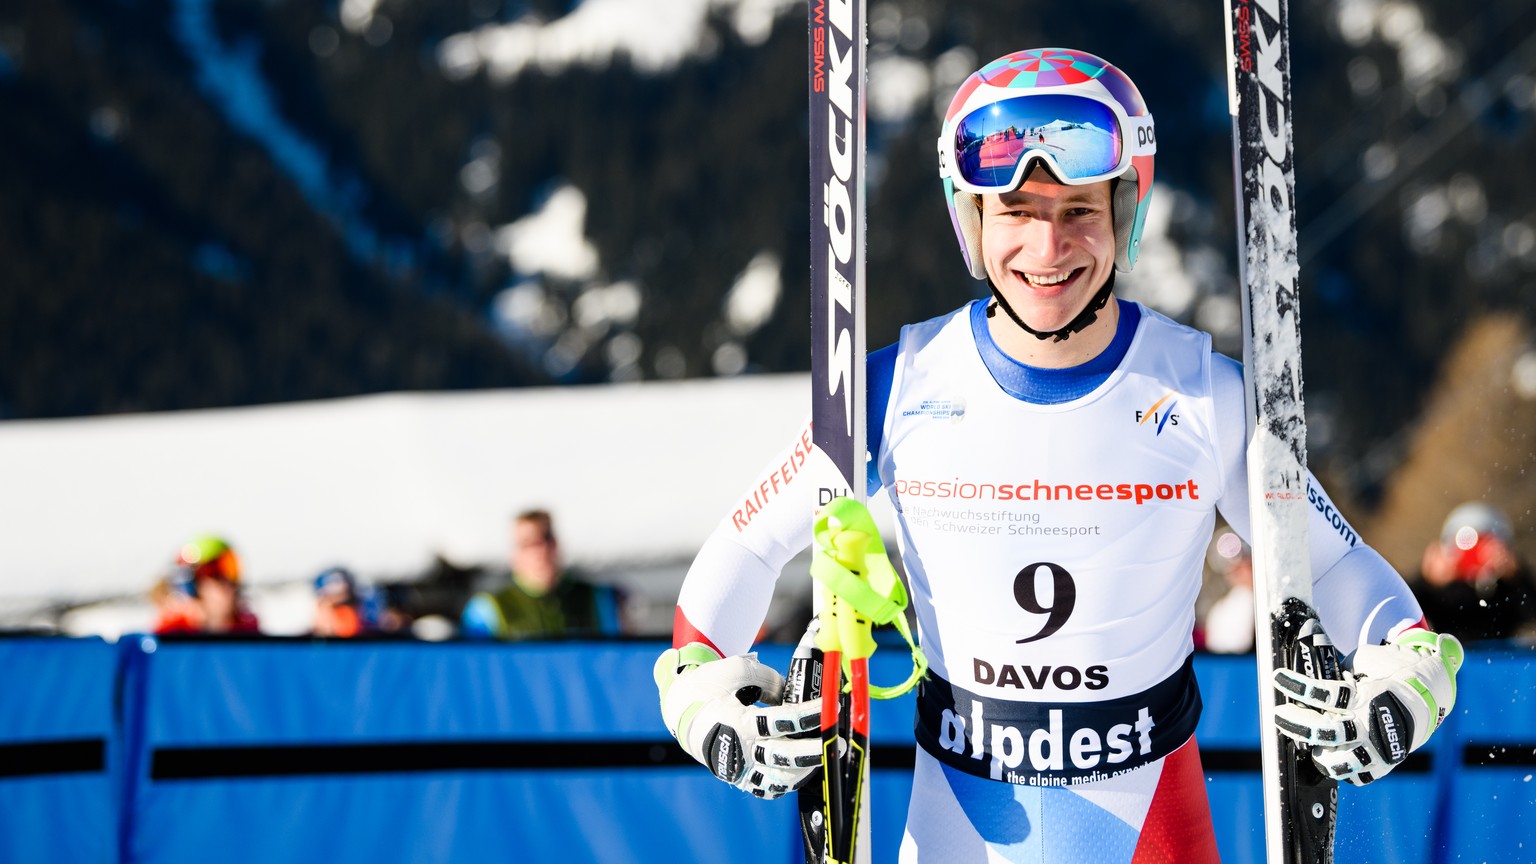 HANDOUT - Marco Odermatt, Schweiz, gewinnt die Abfahrt der FIS Junior World Ski Championships in Davos am Mittwoch, 31. Januar 2018. (JWSC Davos 2018/Manuel Lopez) *** NO SALES, DARF NUR MIT VOLLSTAEN ...